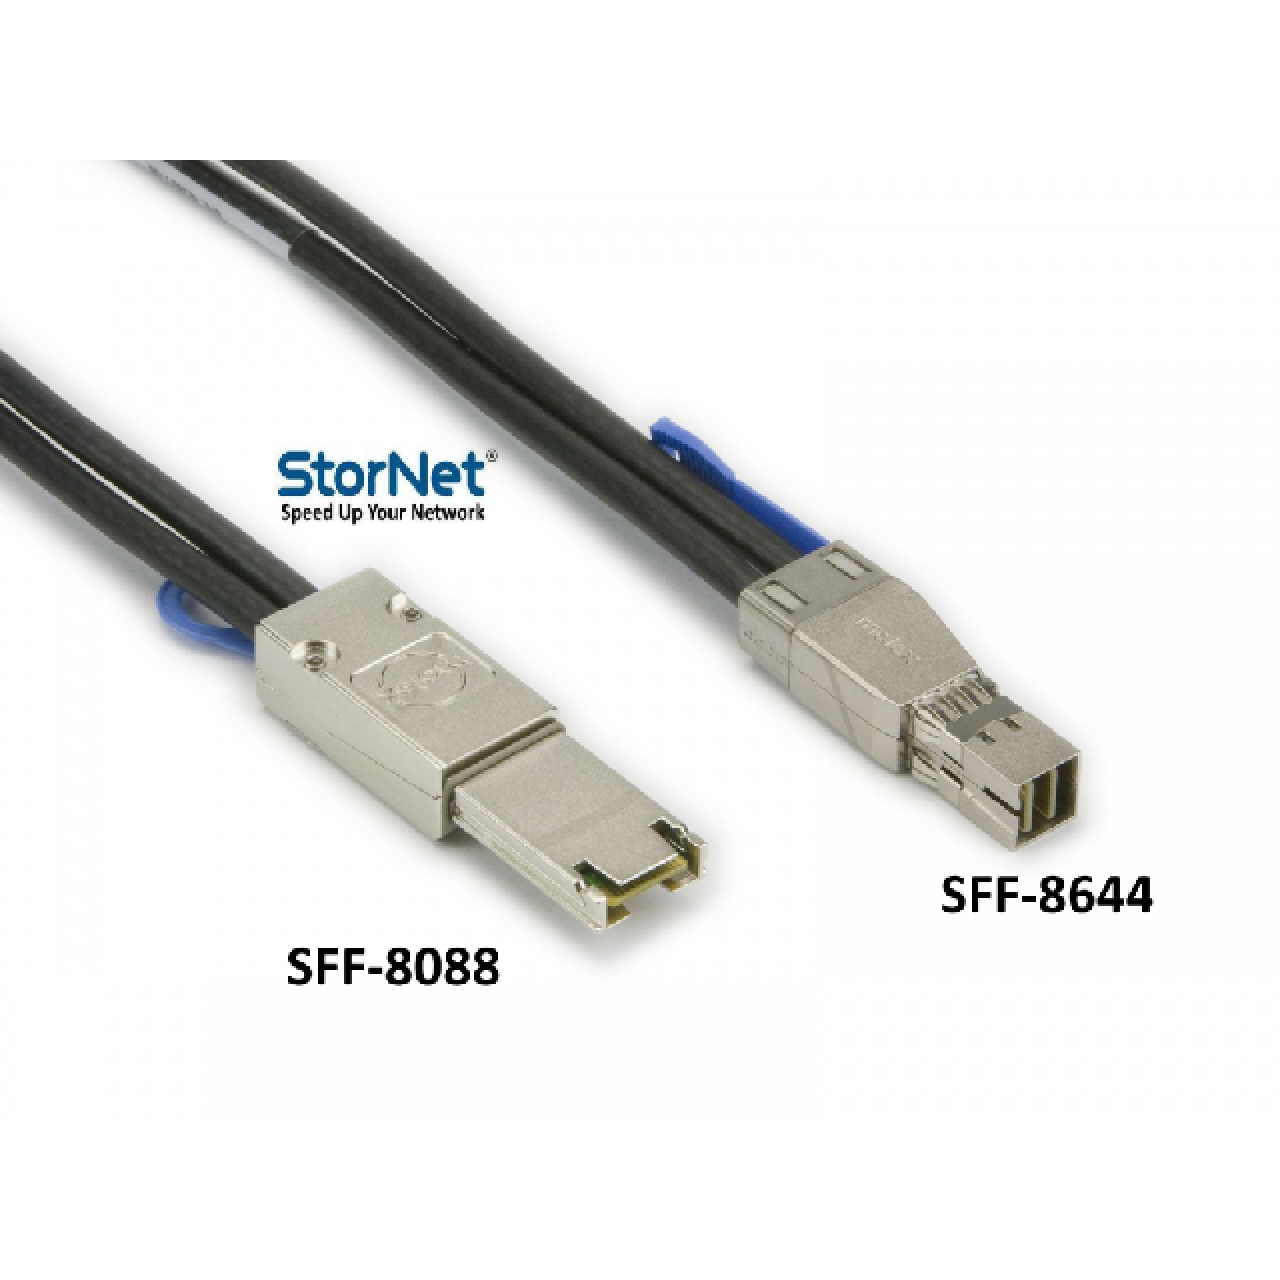 3metre MiniSAS ipass to External MiniSAS HD Kablo StorNET SFF8644 to SFF8088